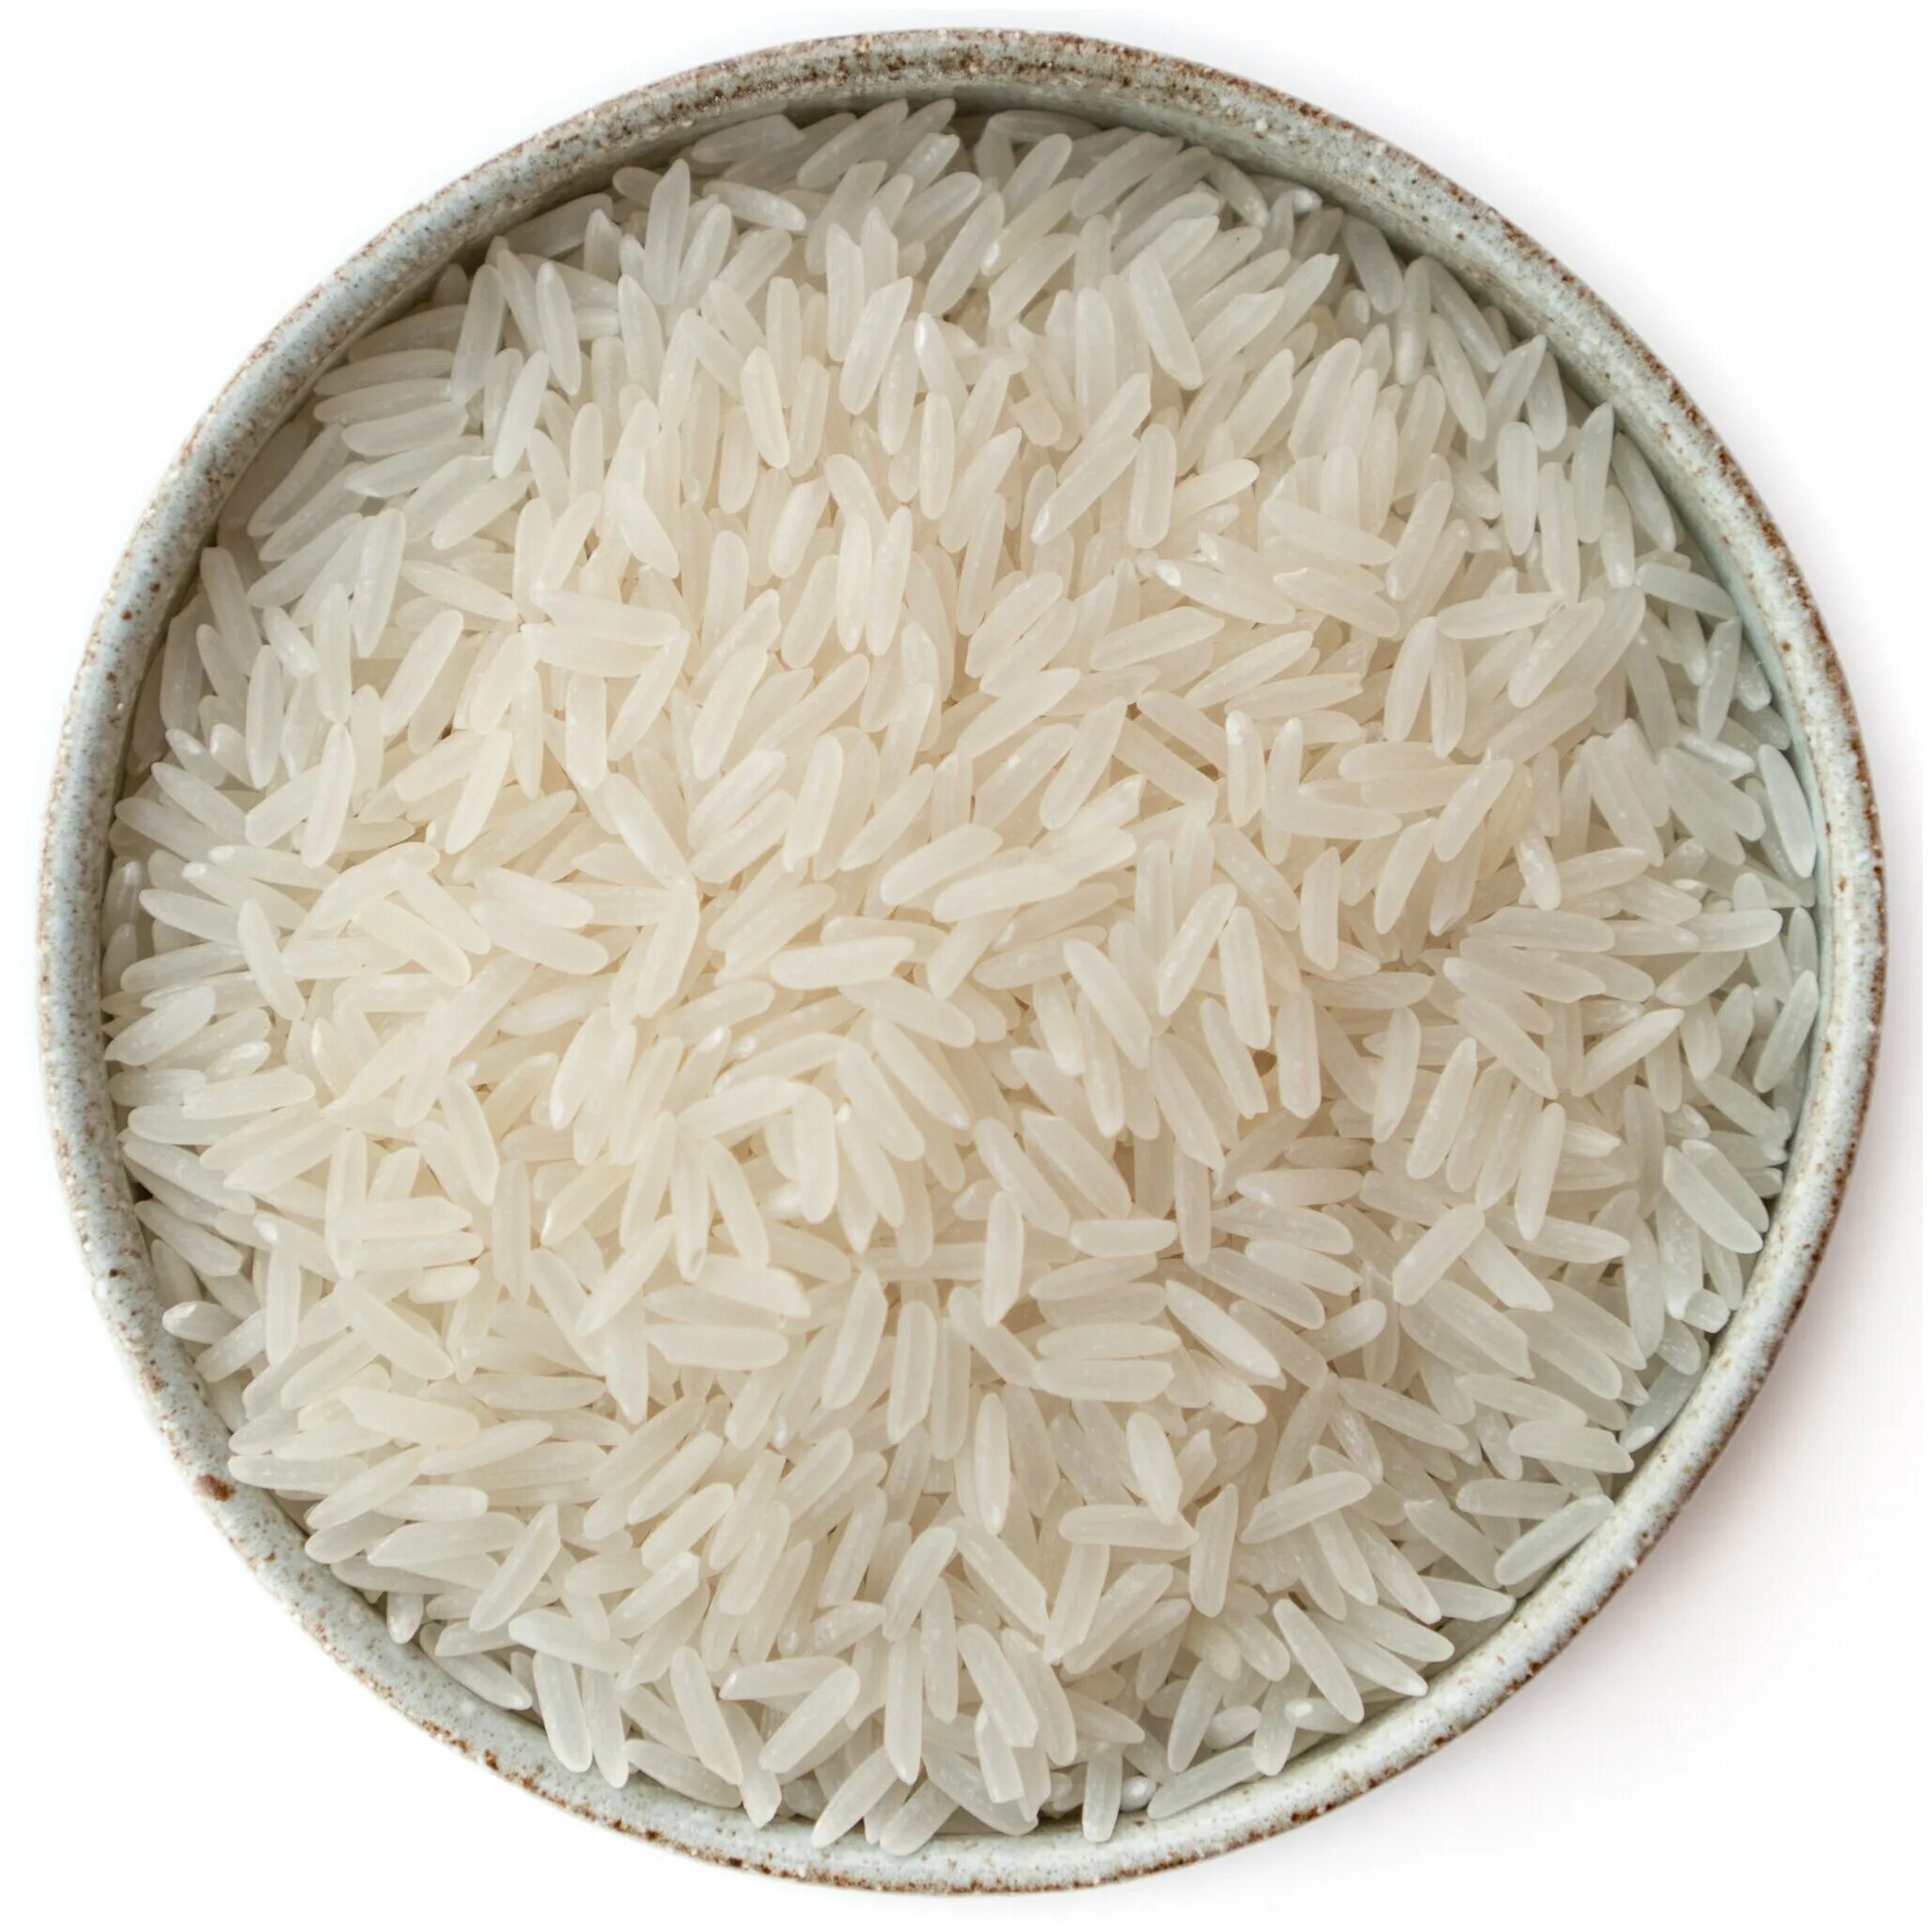 Рис белый девзира. Рис басмати. Рис девзира белый 1кг. Рис сорта басмати.